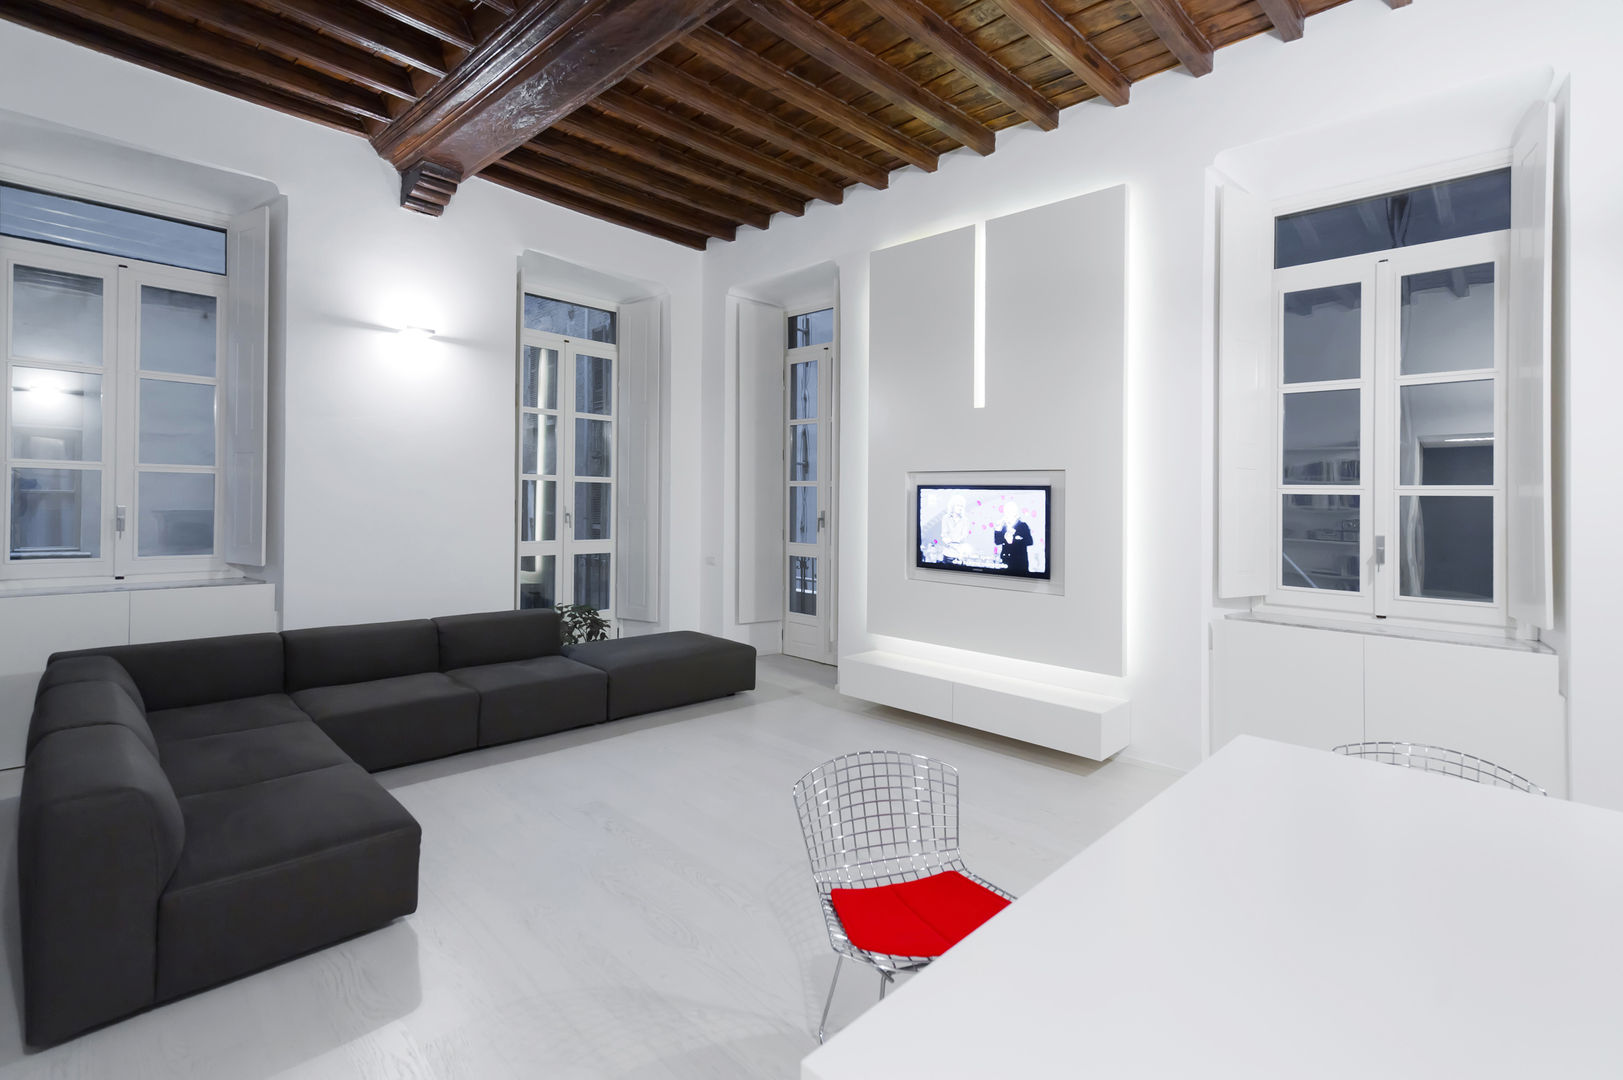 U:BA house, Comoglio Architetti Comoglio Architetti Living room